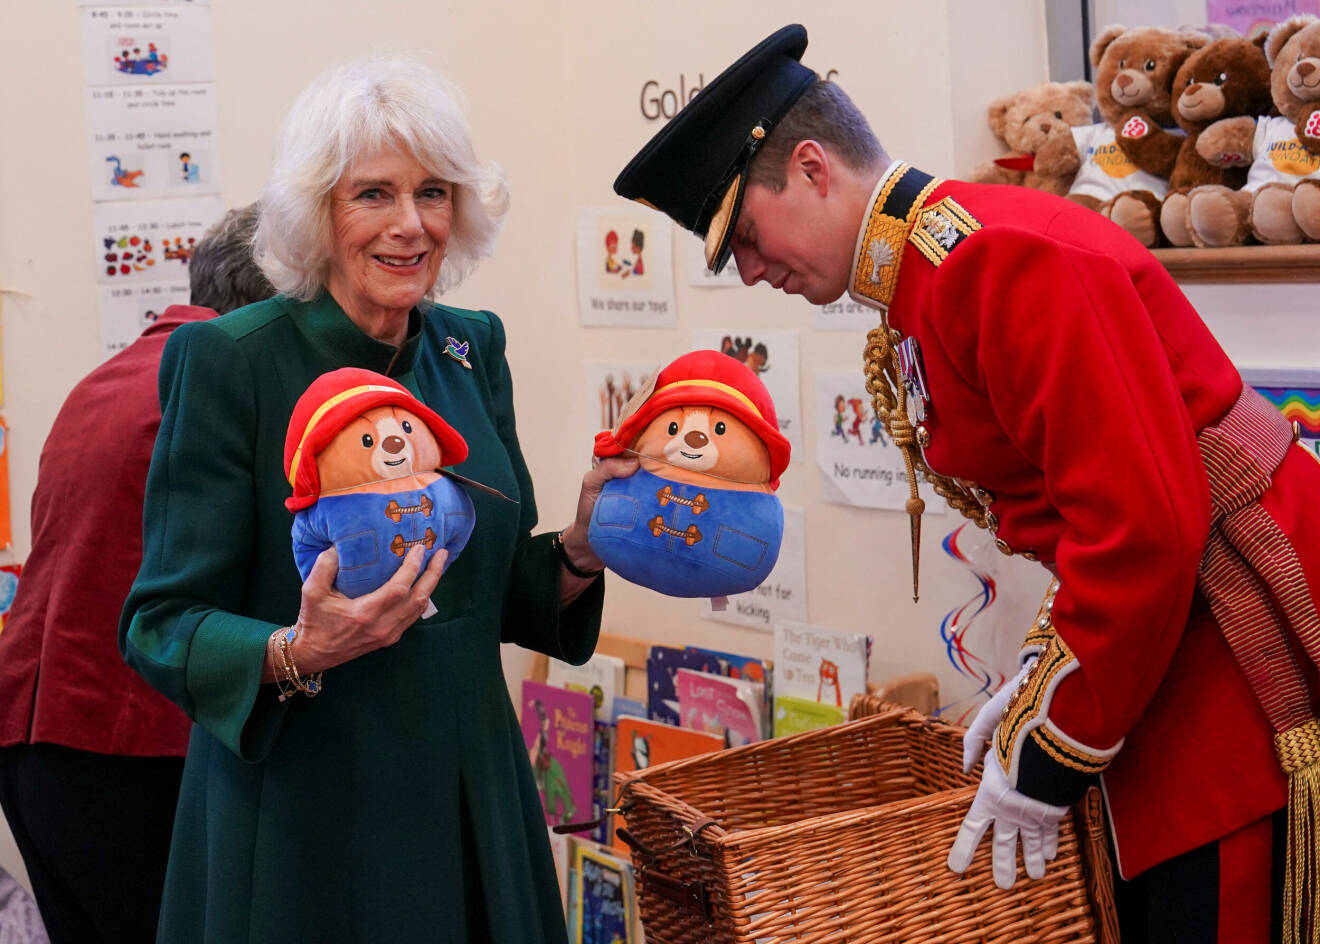 Drottninggemål Camilla med två Paddington-björnar i handen som hon ska ge bort.